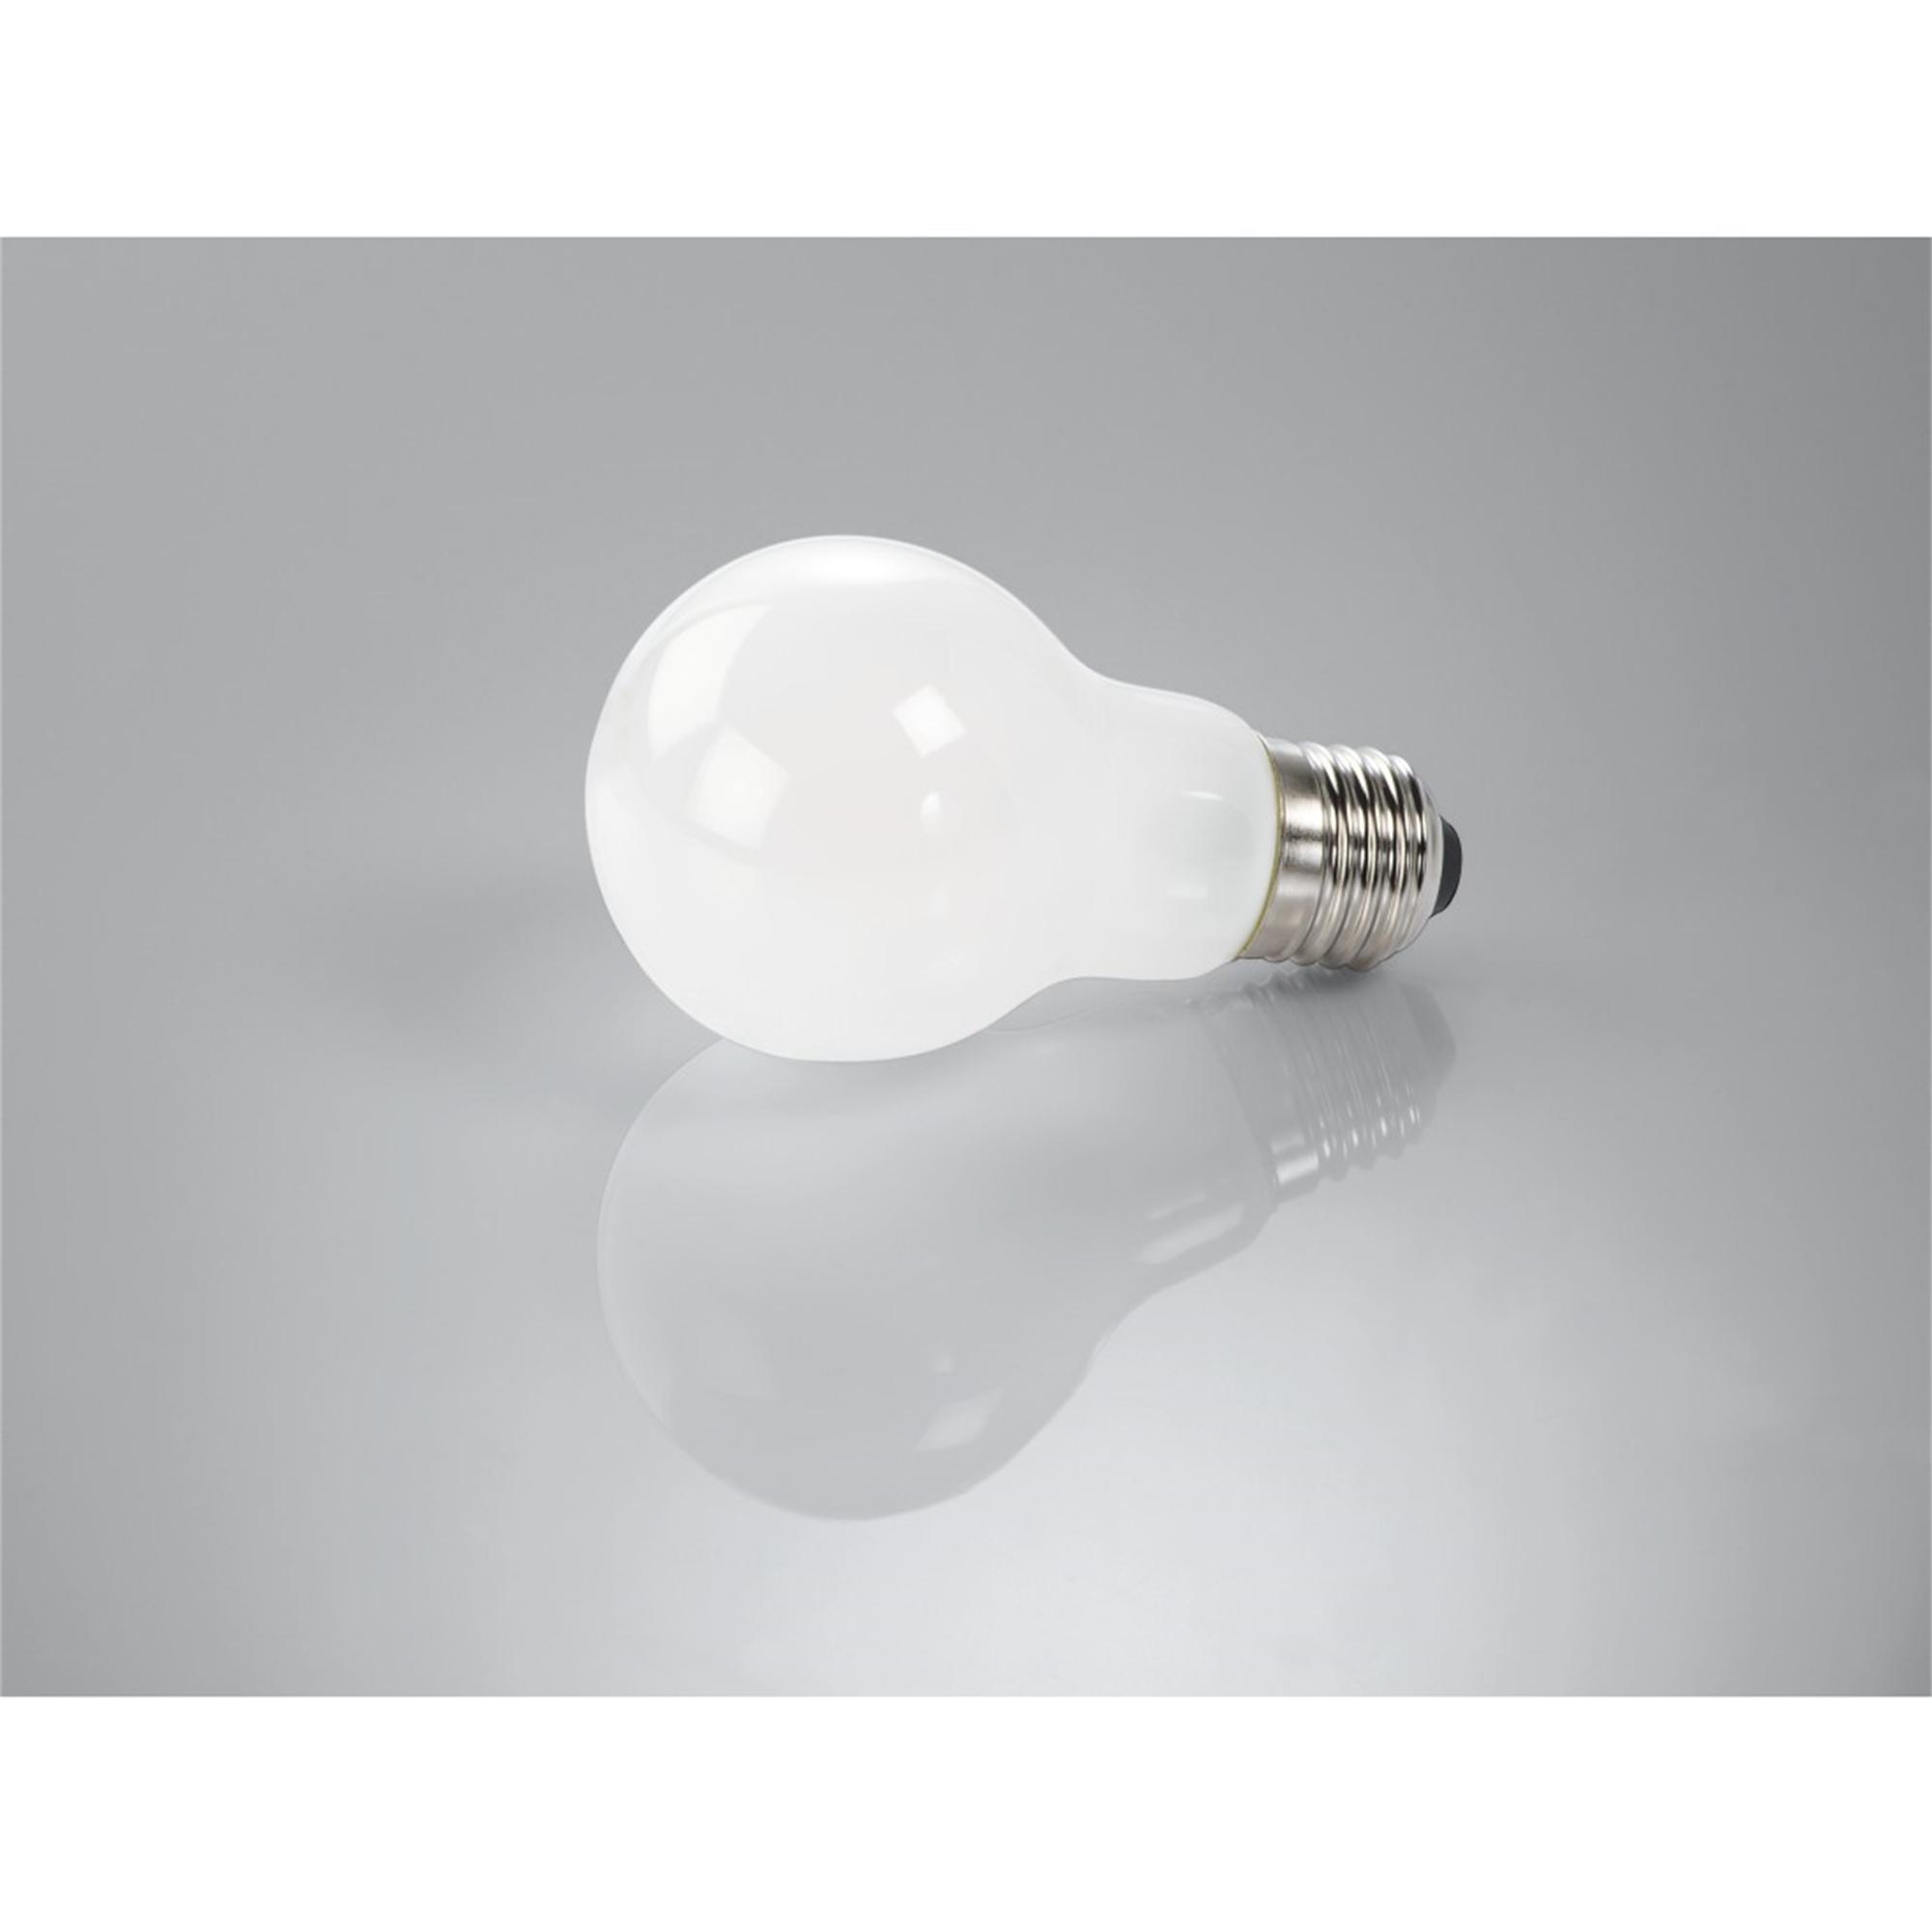 806lm LED-Lampe 60W Warmweiß ersetzt XAVAX E27 E27,